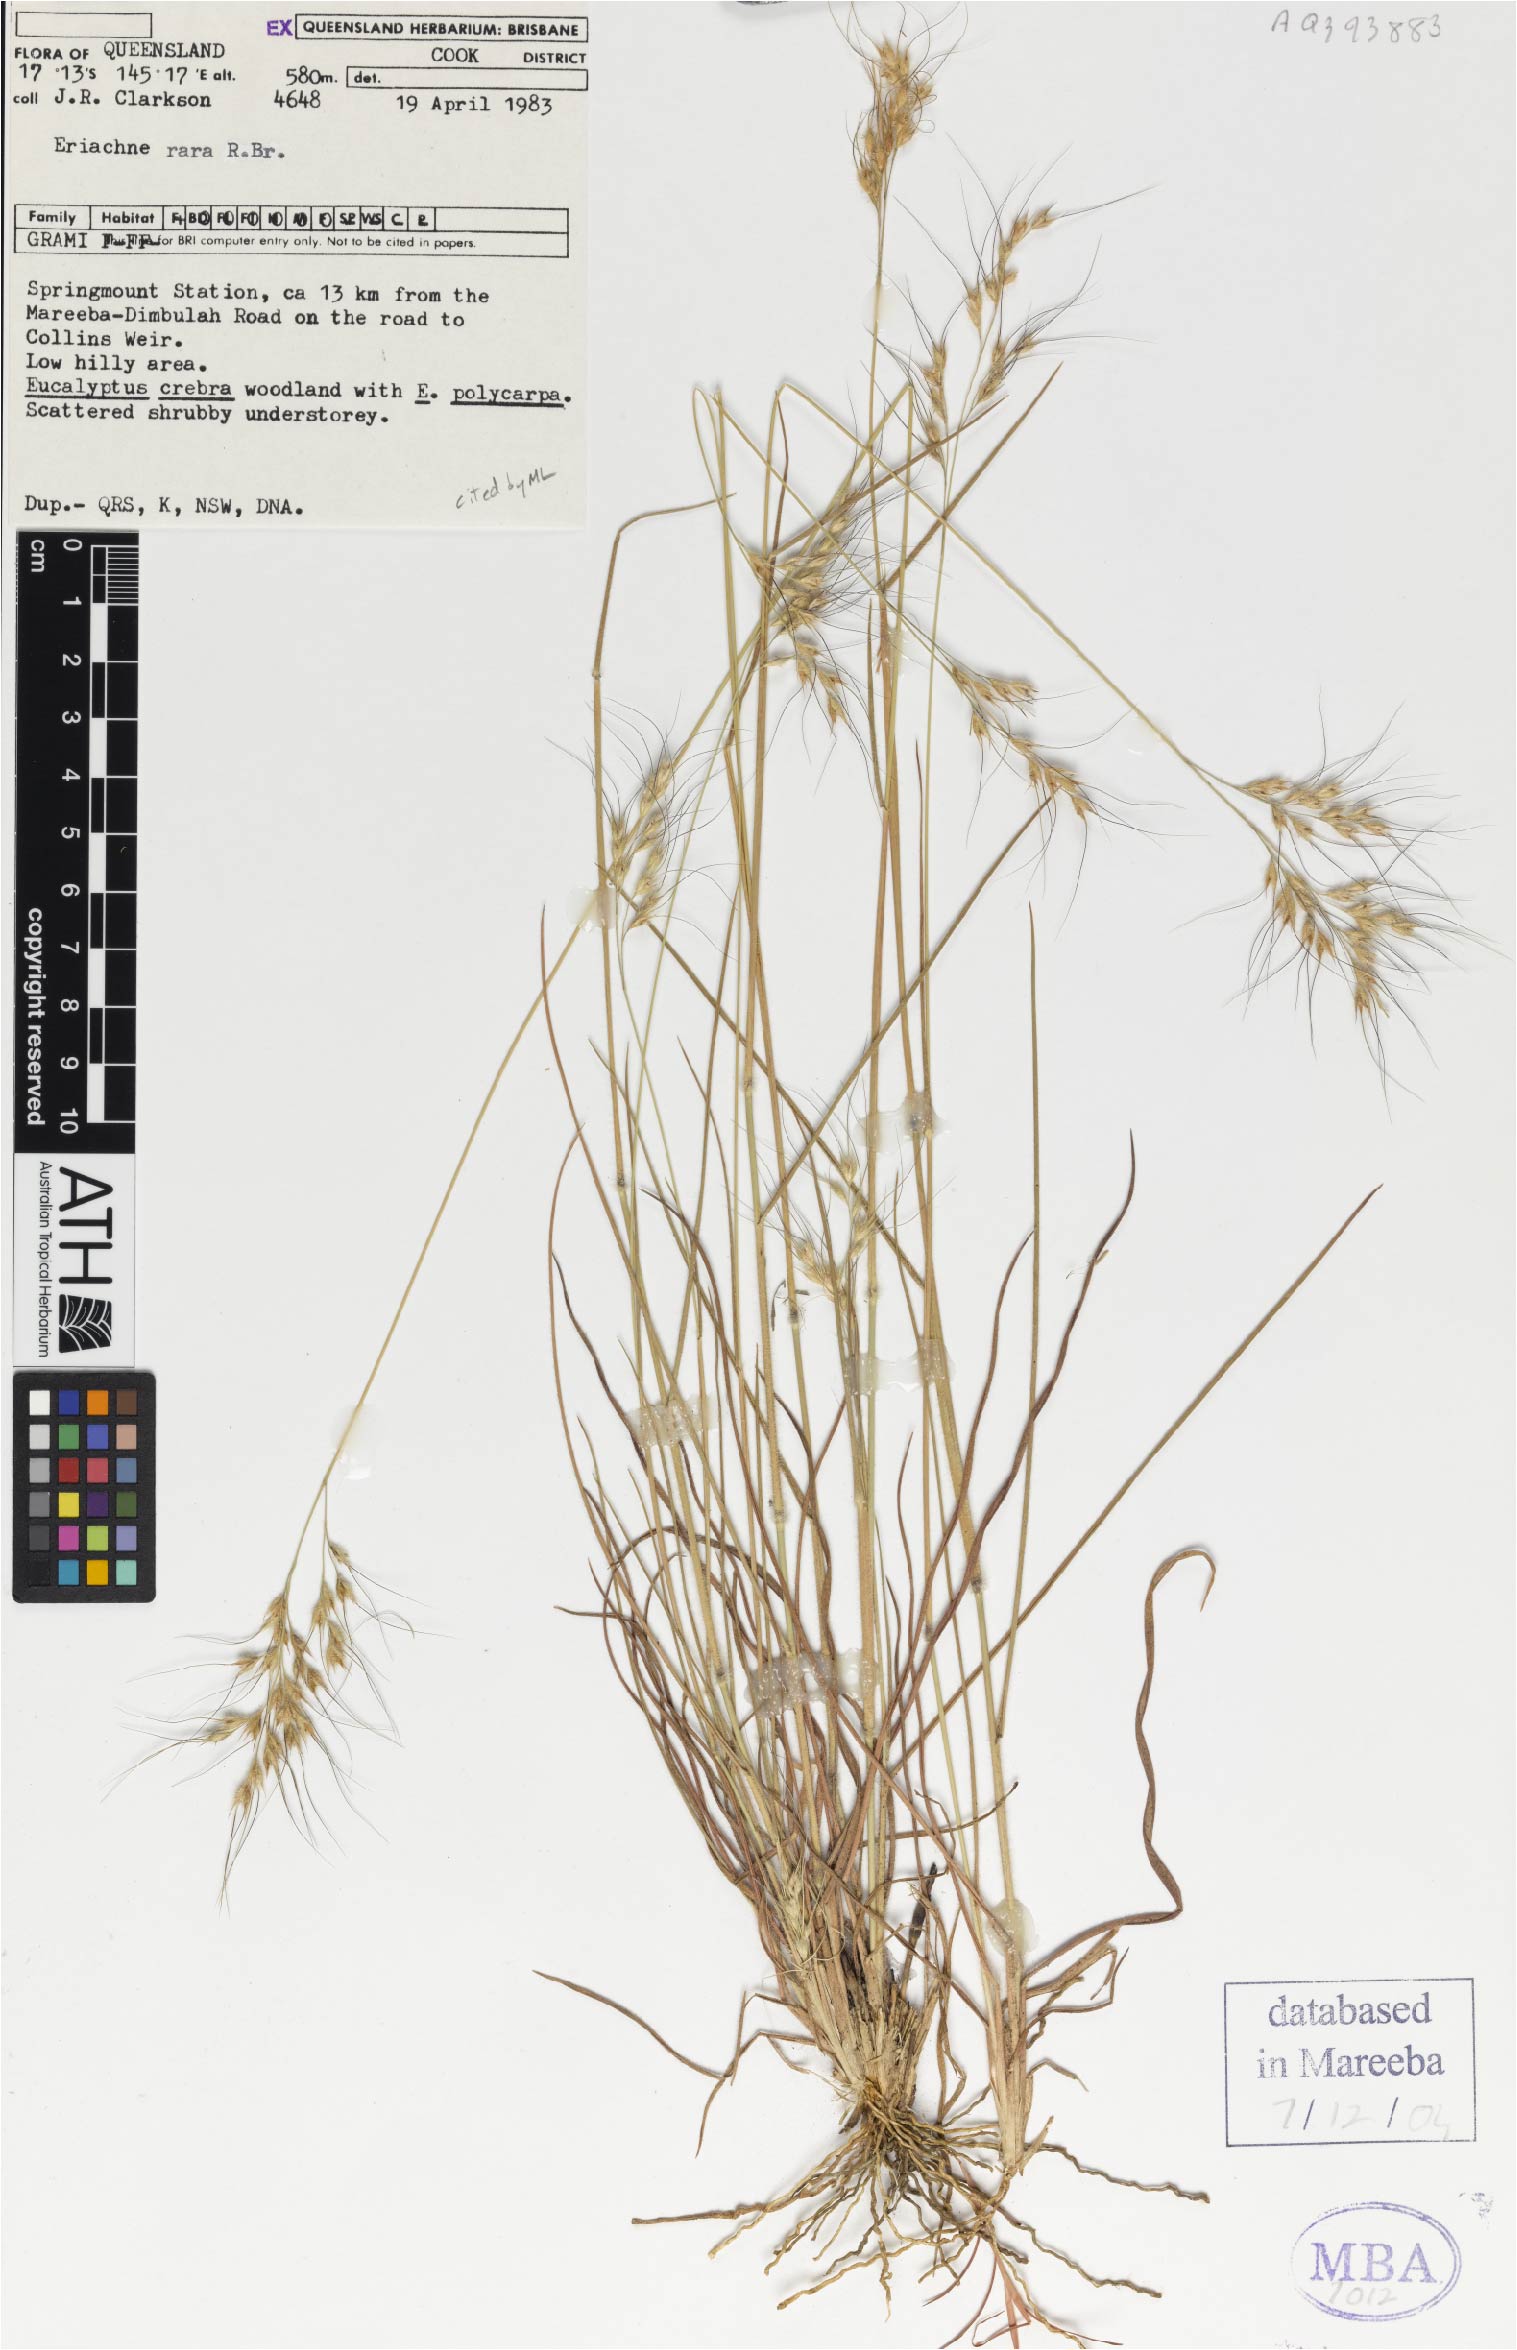 Fig. 1. Herbarium sheet of Eriachne rara (MBA7012)